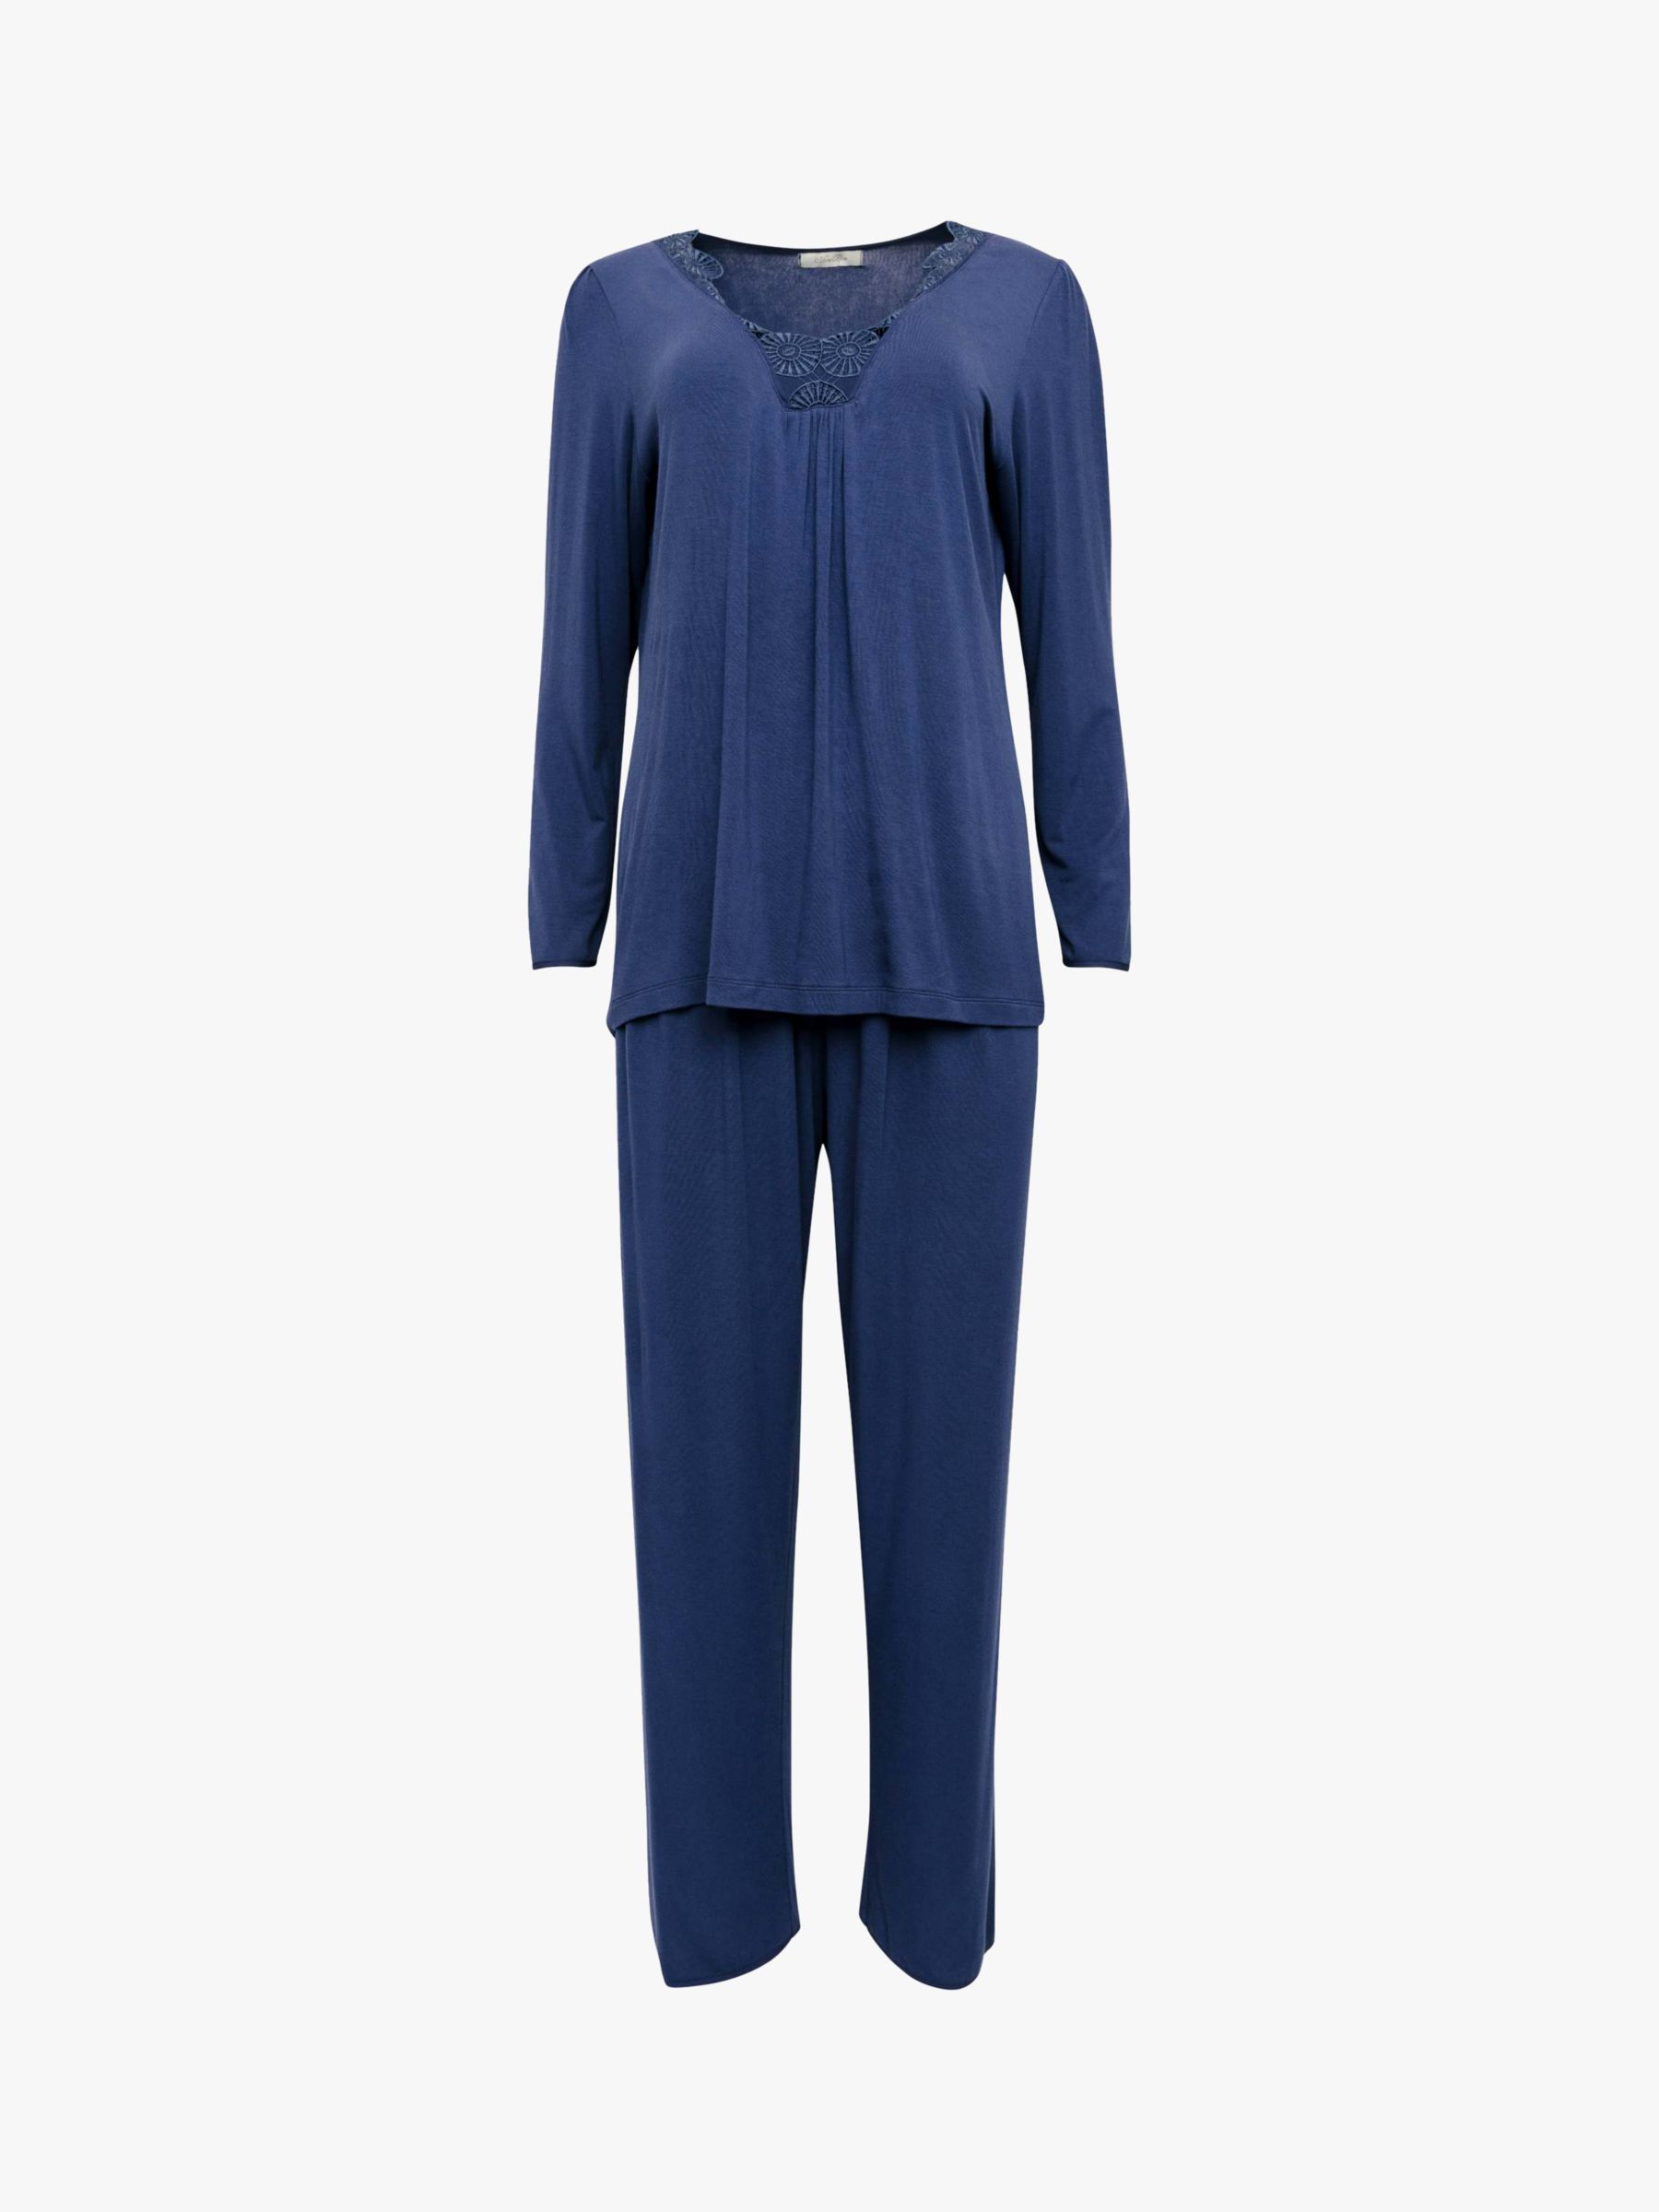 Buy Nora Rose by Cyberjammies Winnie Jersey Pyjamas, Navy Online at johnlewis.com